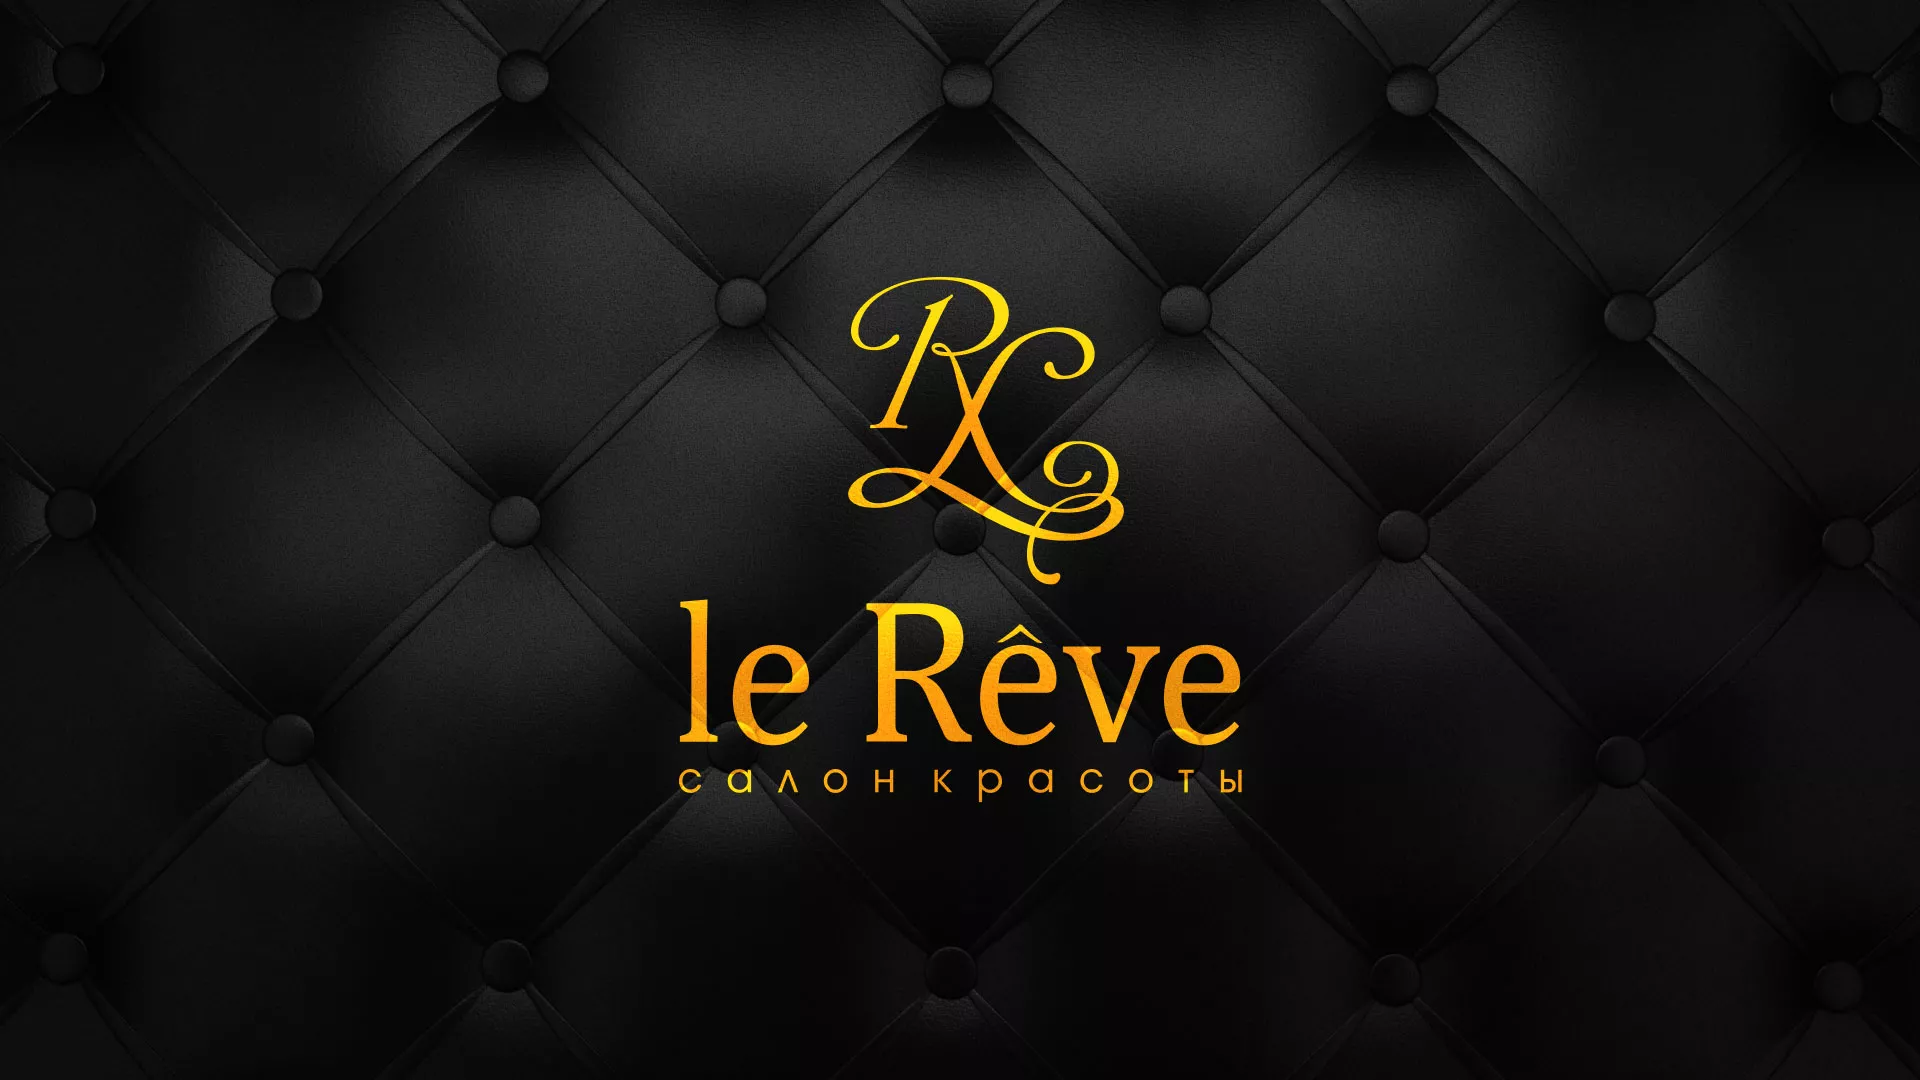 Разработка листовок для салона красоты «Le Reve» в Анжеро-Судженске